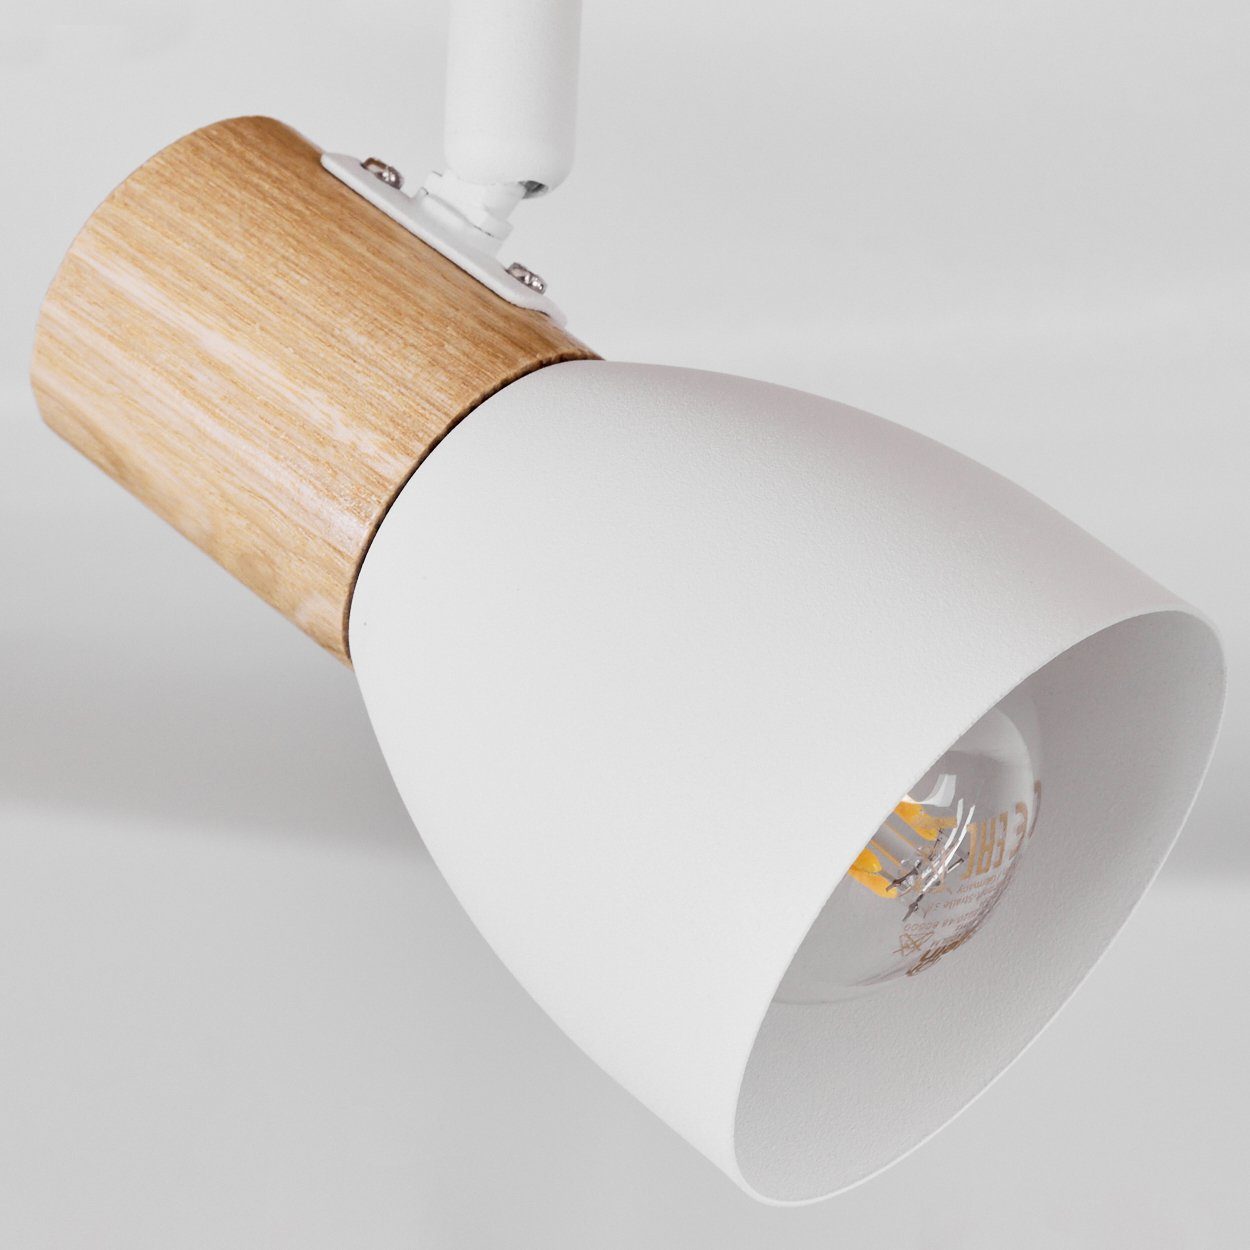 Deckenlampe moderne »Marostica« hofstein in Natur/Weiß, Deckenleuchte aus Metall/Holz ohne Leuchtmittel